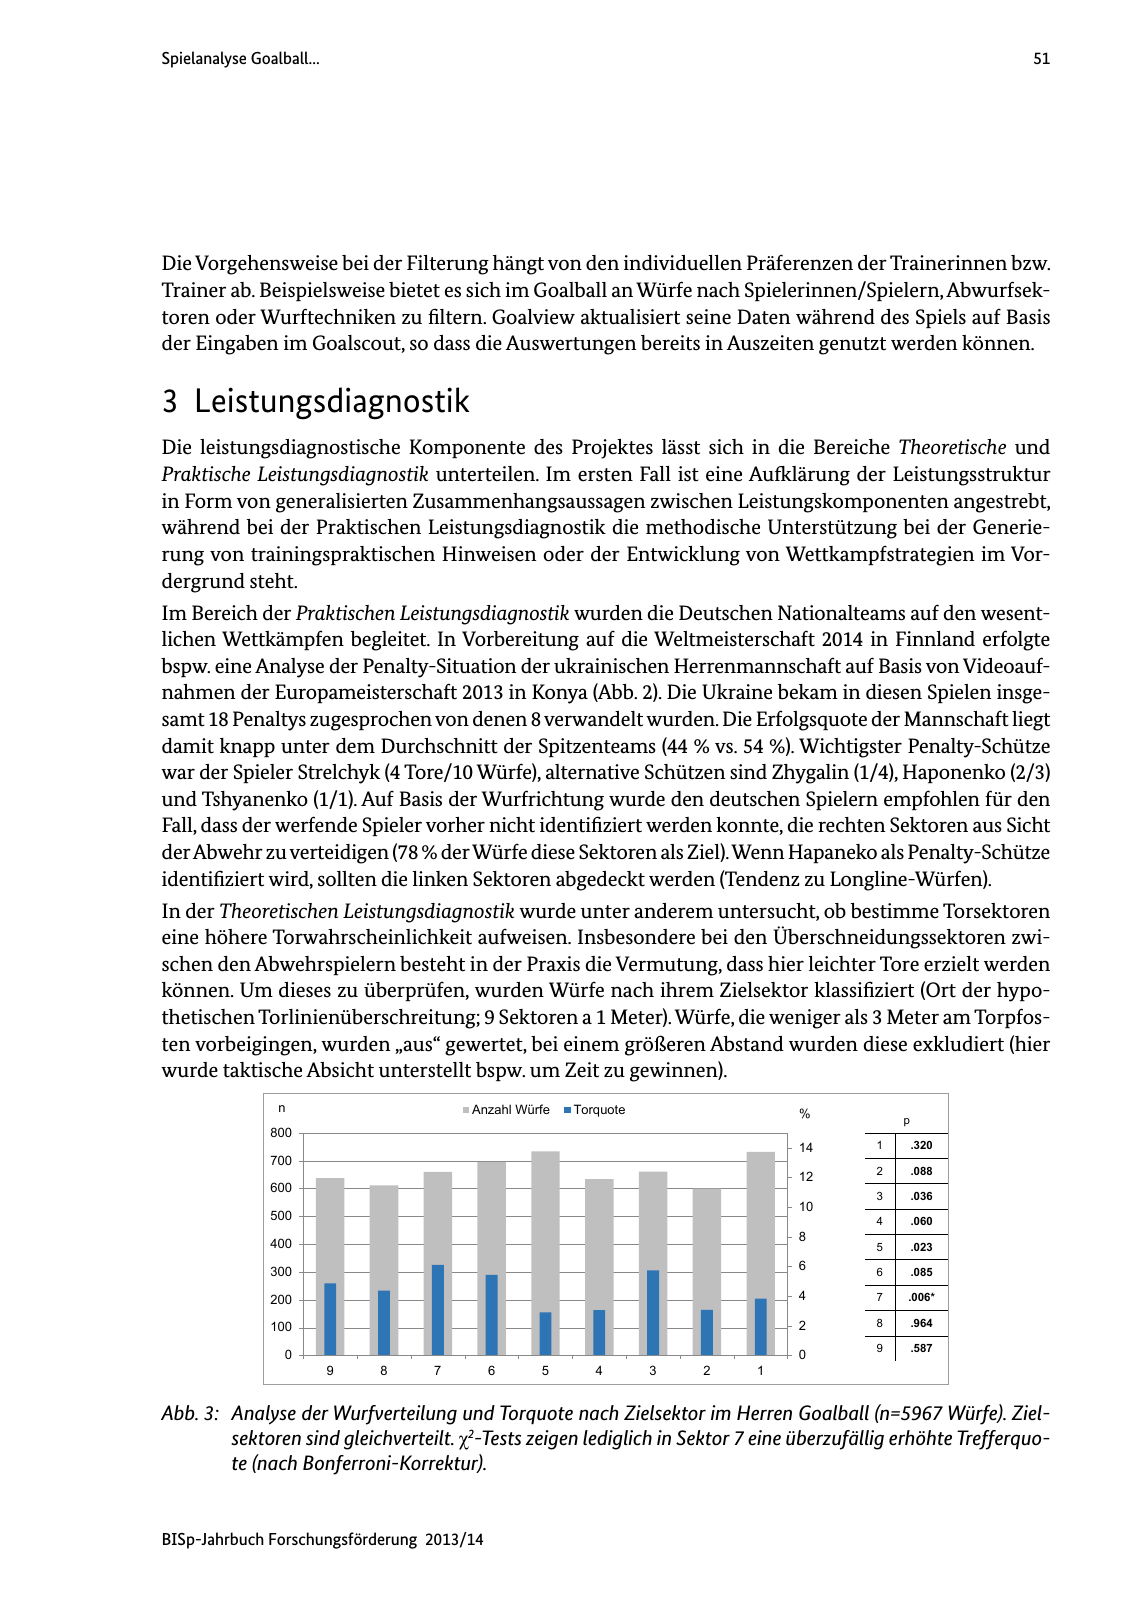 Vorschau BISp-Jahrbuch Forschungsförderung 2013/14 Seite 52